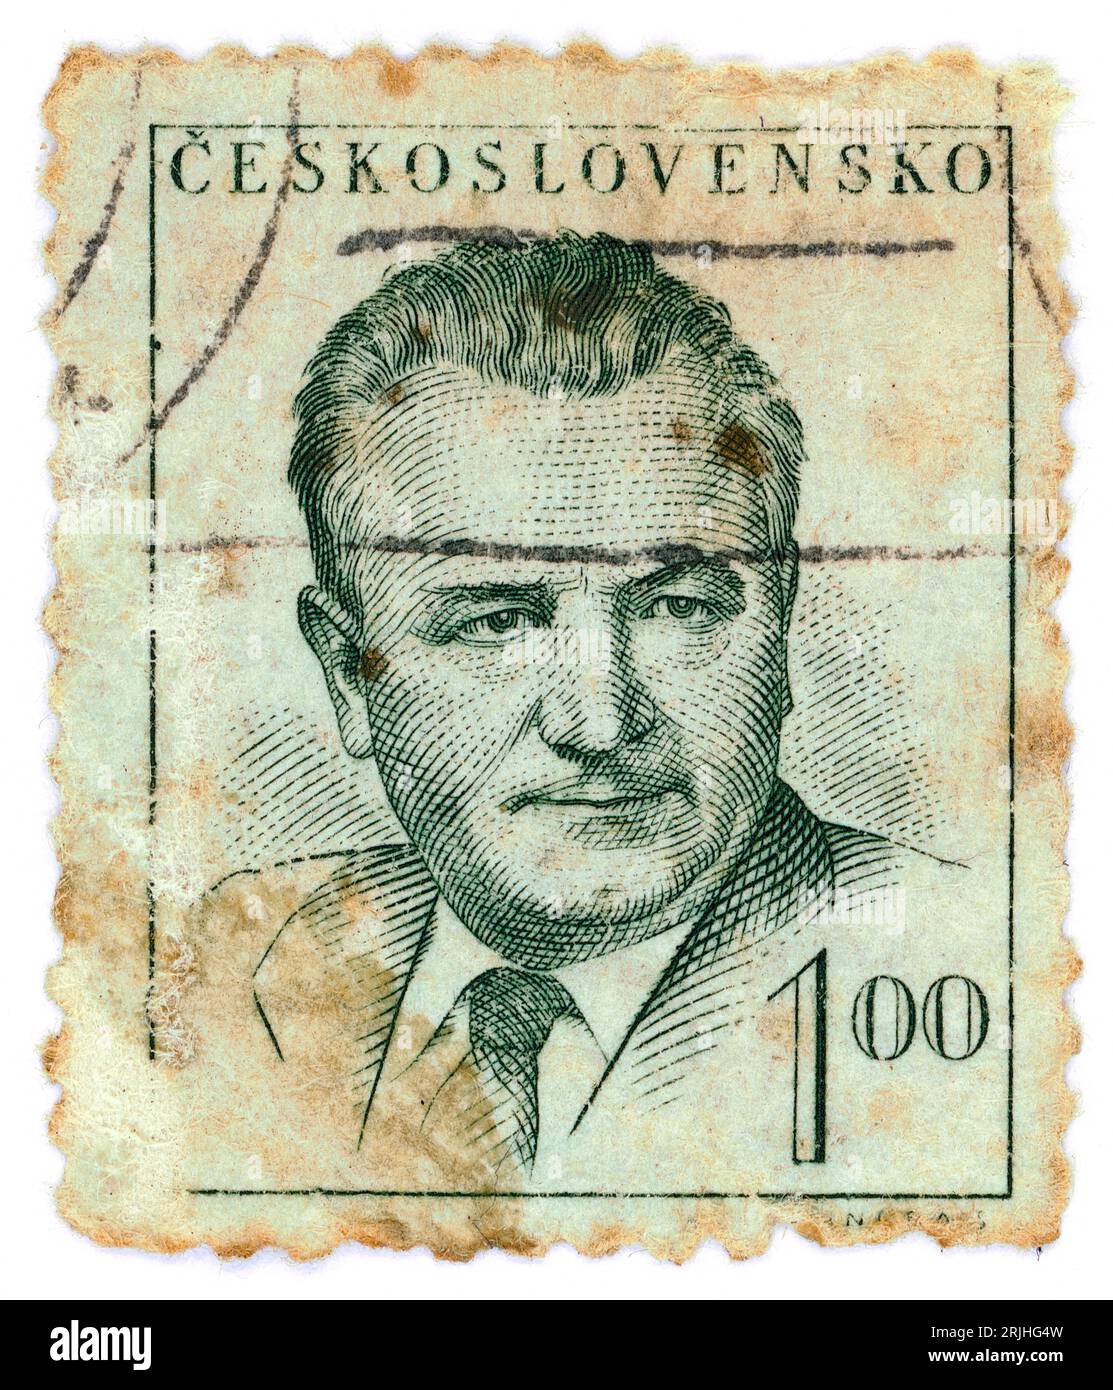 Klement Gottwald (1896 – 1953). Timbre-poste émis en Tchécoslovaquie en 1948. Klement Gottwald était un homme politique communiste tchèque, qui a été le chef du Parti communiste de Tchécoslovaquie de 1929 jusqu'à sa mort en 1953 - nommé secrétaire général jusqu'en 1945 et président de 1945 à 1953. Il fut le premier dirigeant de la Tchécoslovaquie communiste de 1948 à 1953. Banque D'Images